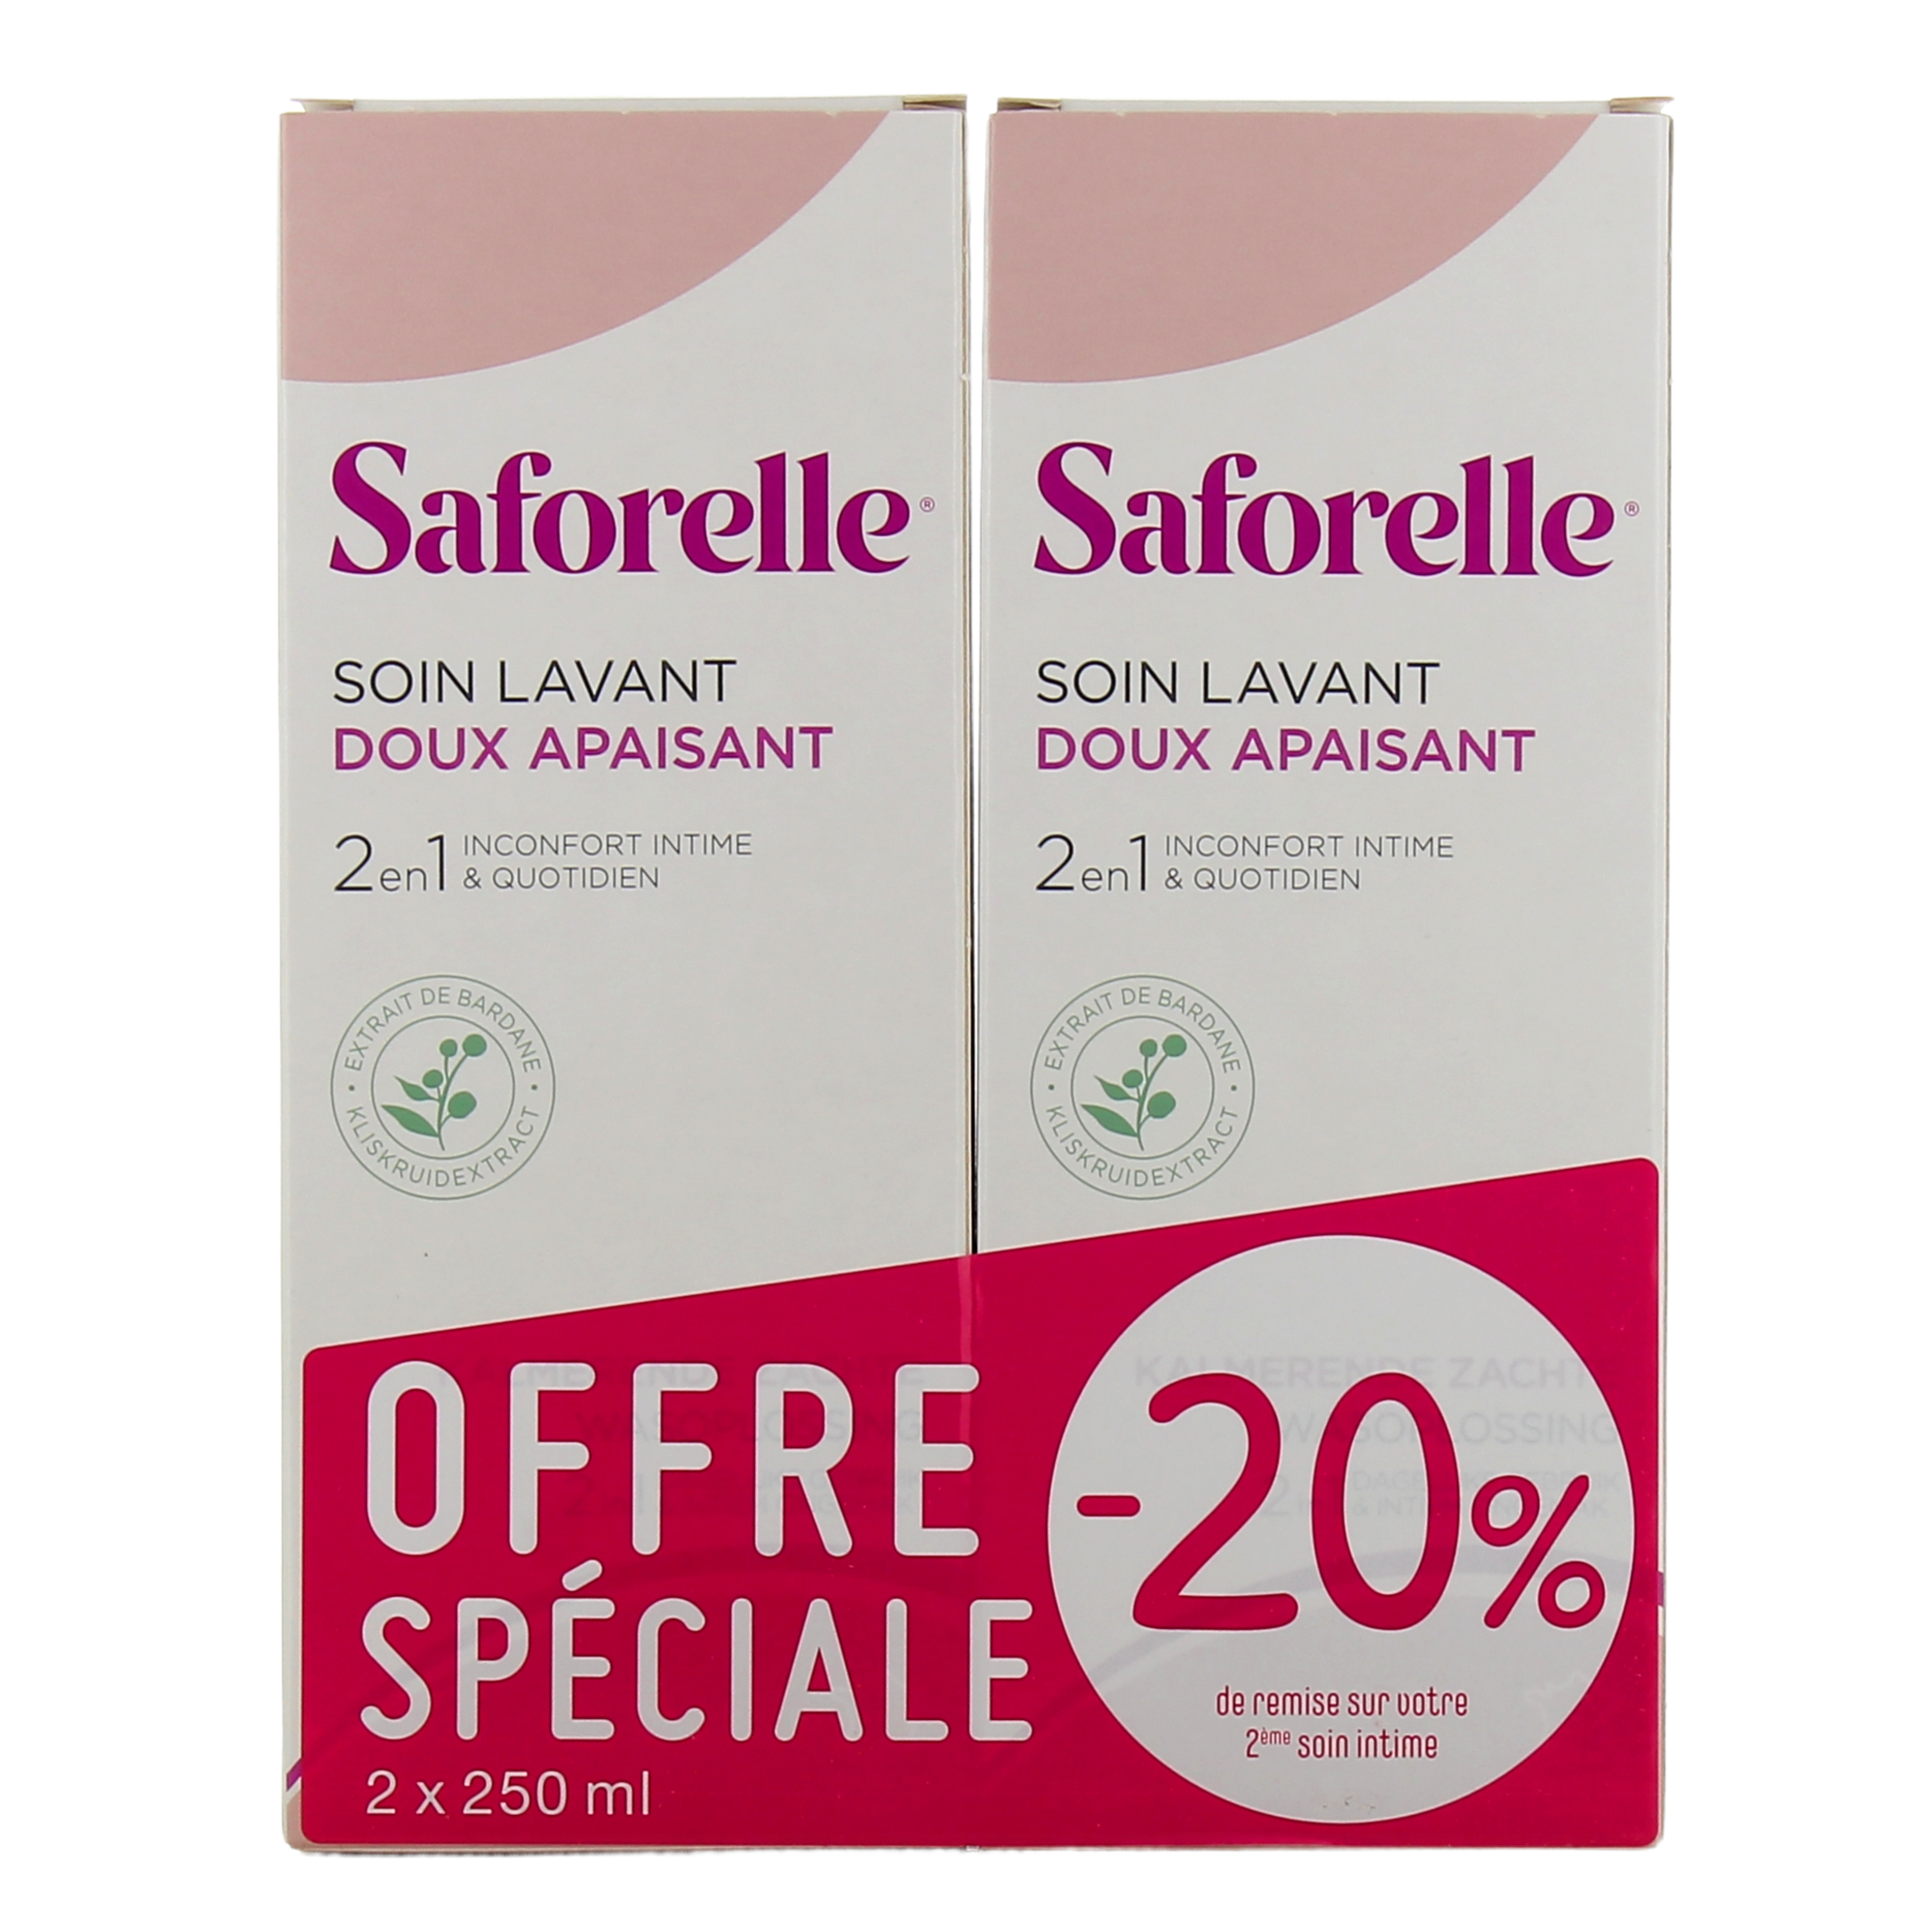 Saforelle - Soin lavant doux apaisant 2 en 1 Inconfort intime & quotidien  (250 ml)